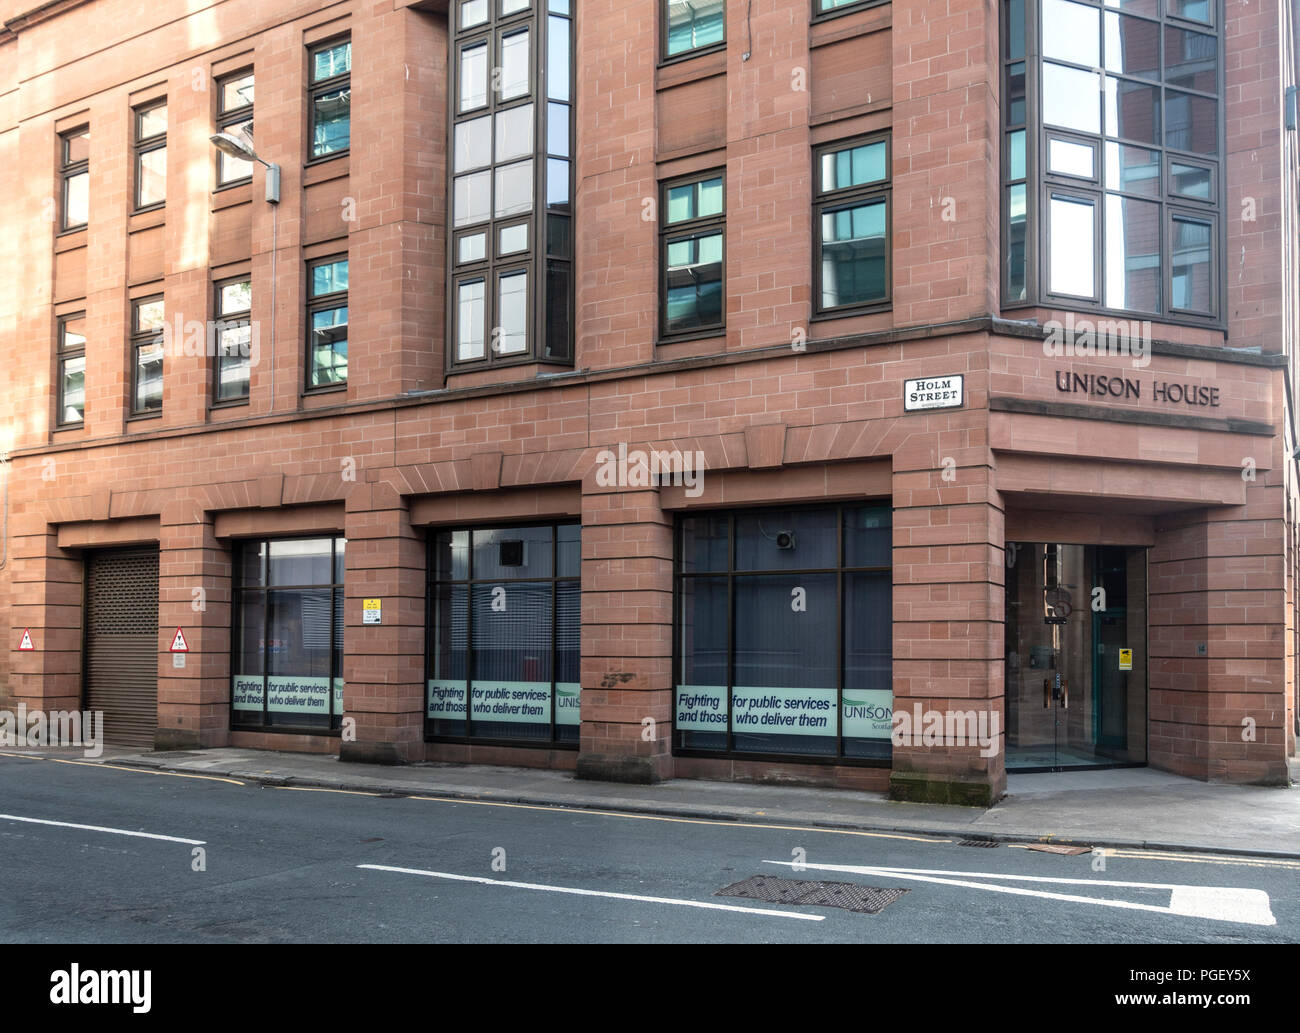 Unison Casa, Ufficio dell'unisono servizio pubblico sindacali, nel centro di Glasgow, Scozia. Foto Stock